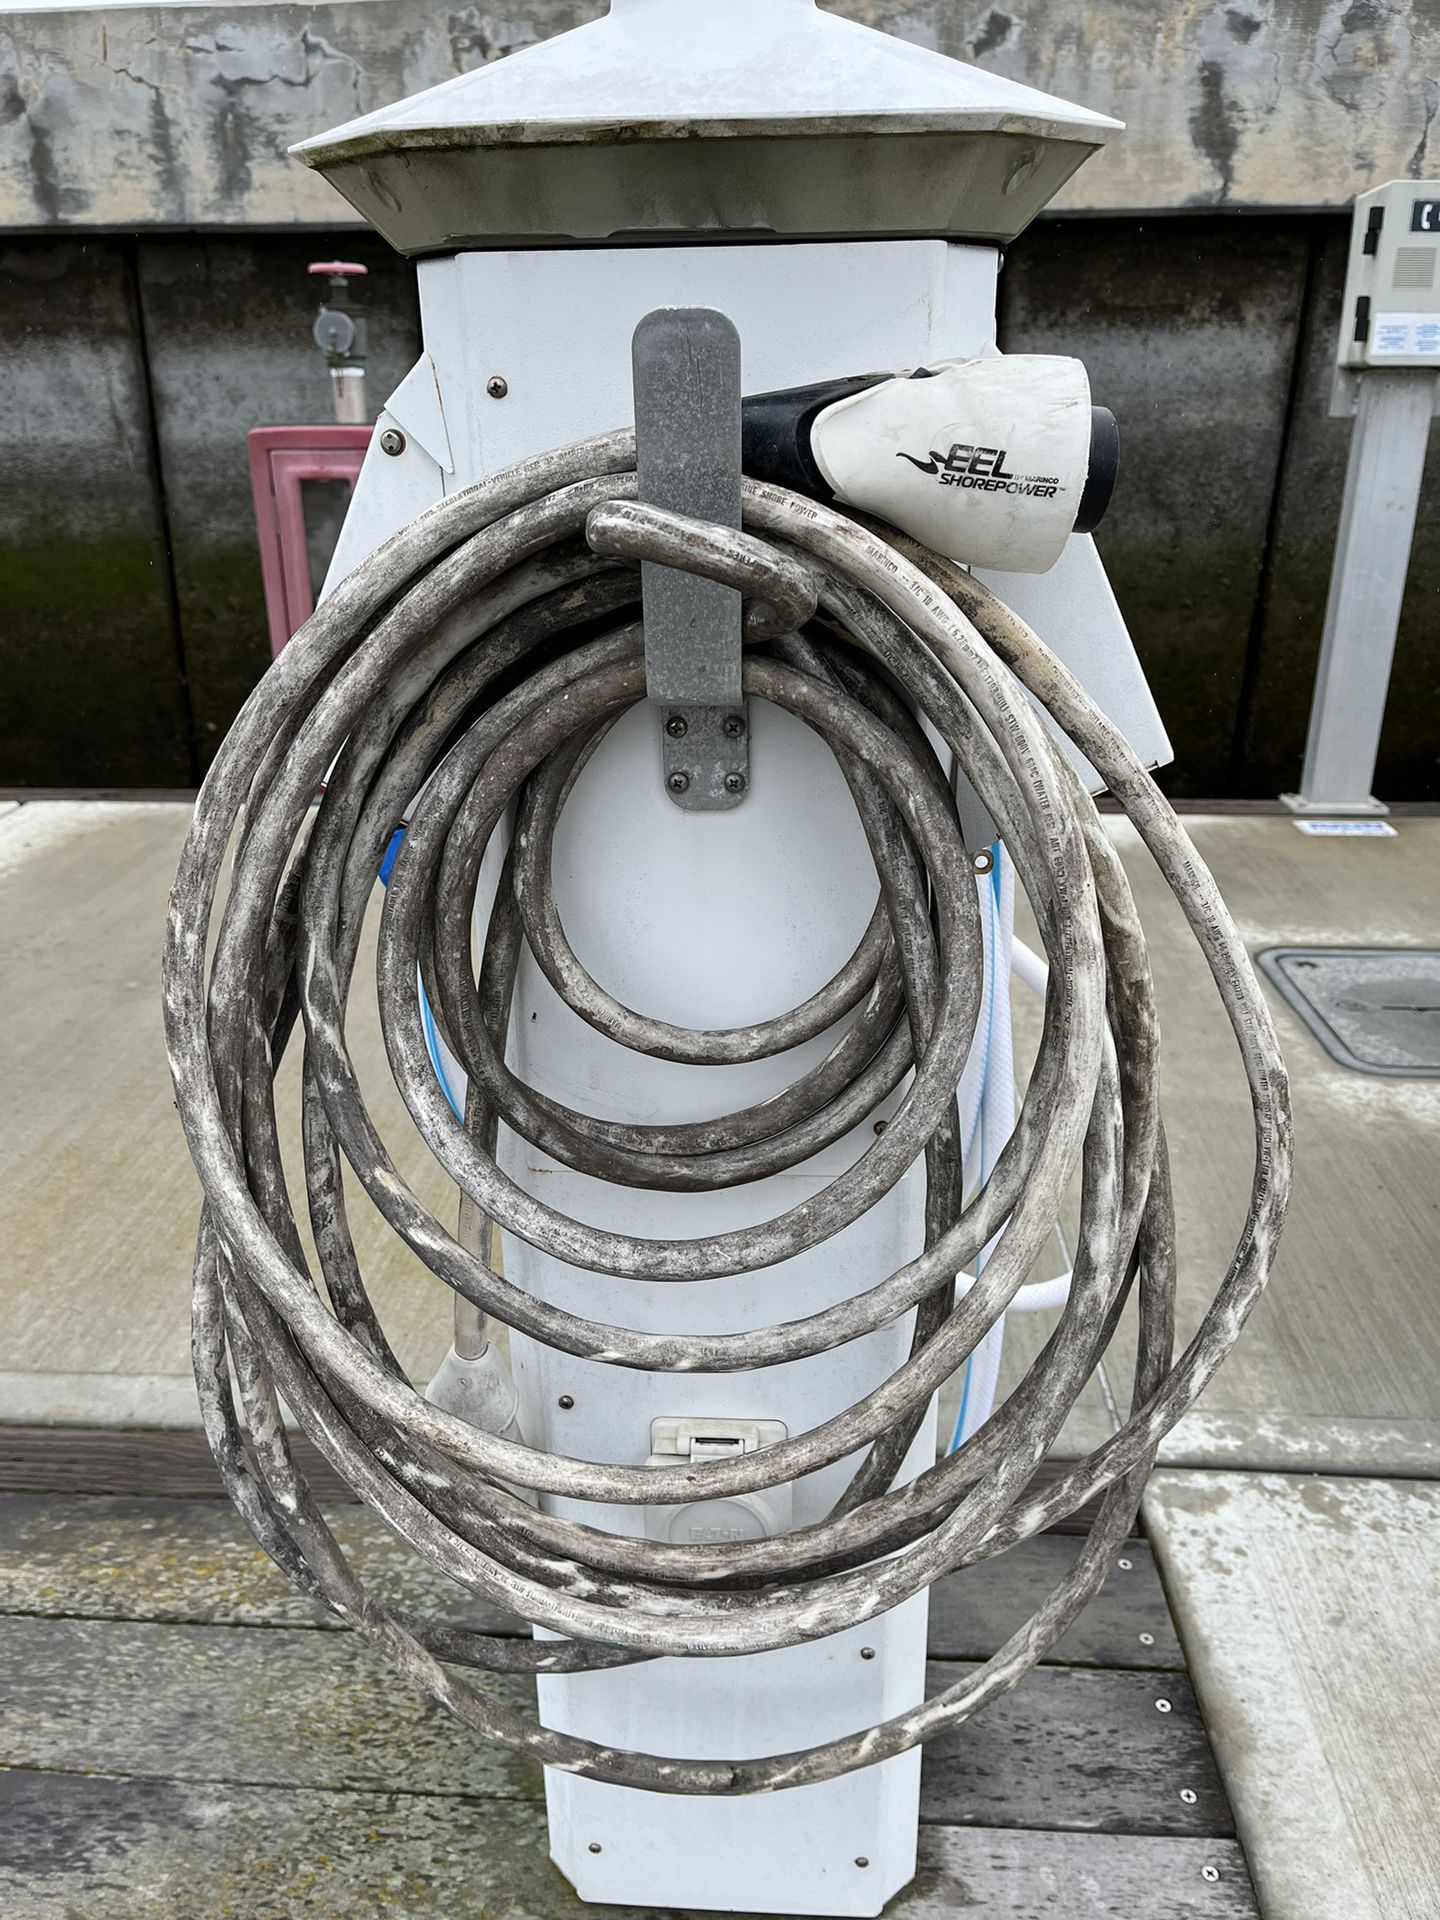 boat shore power cord